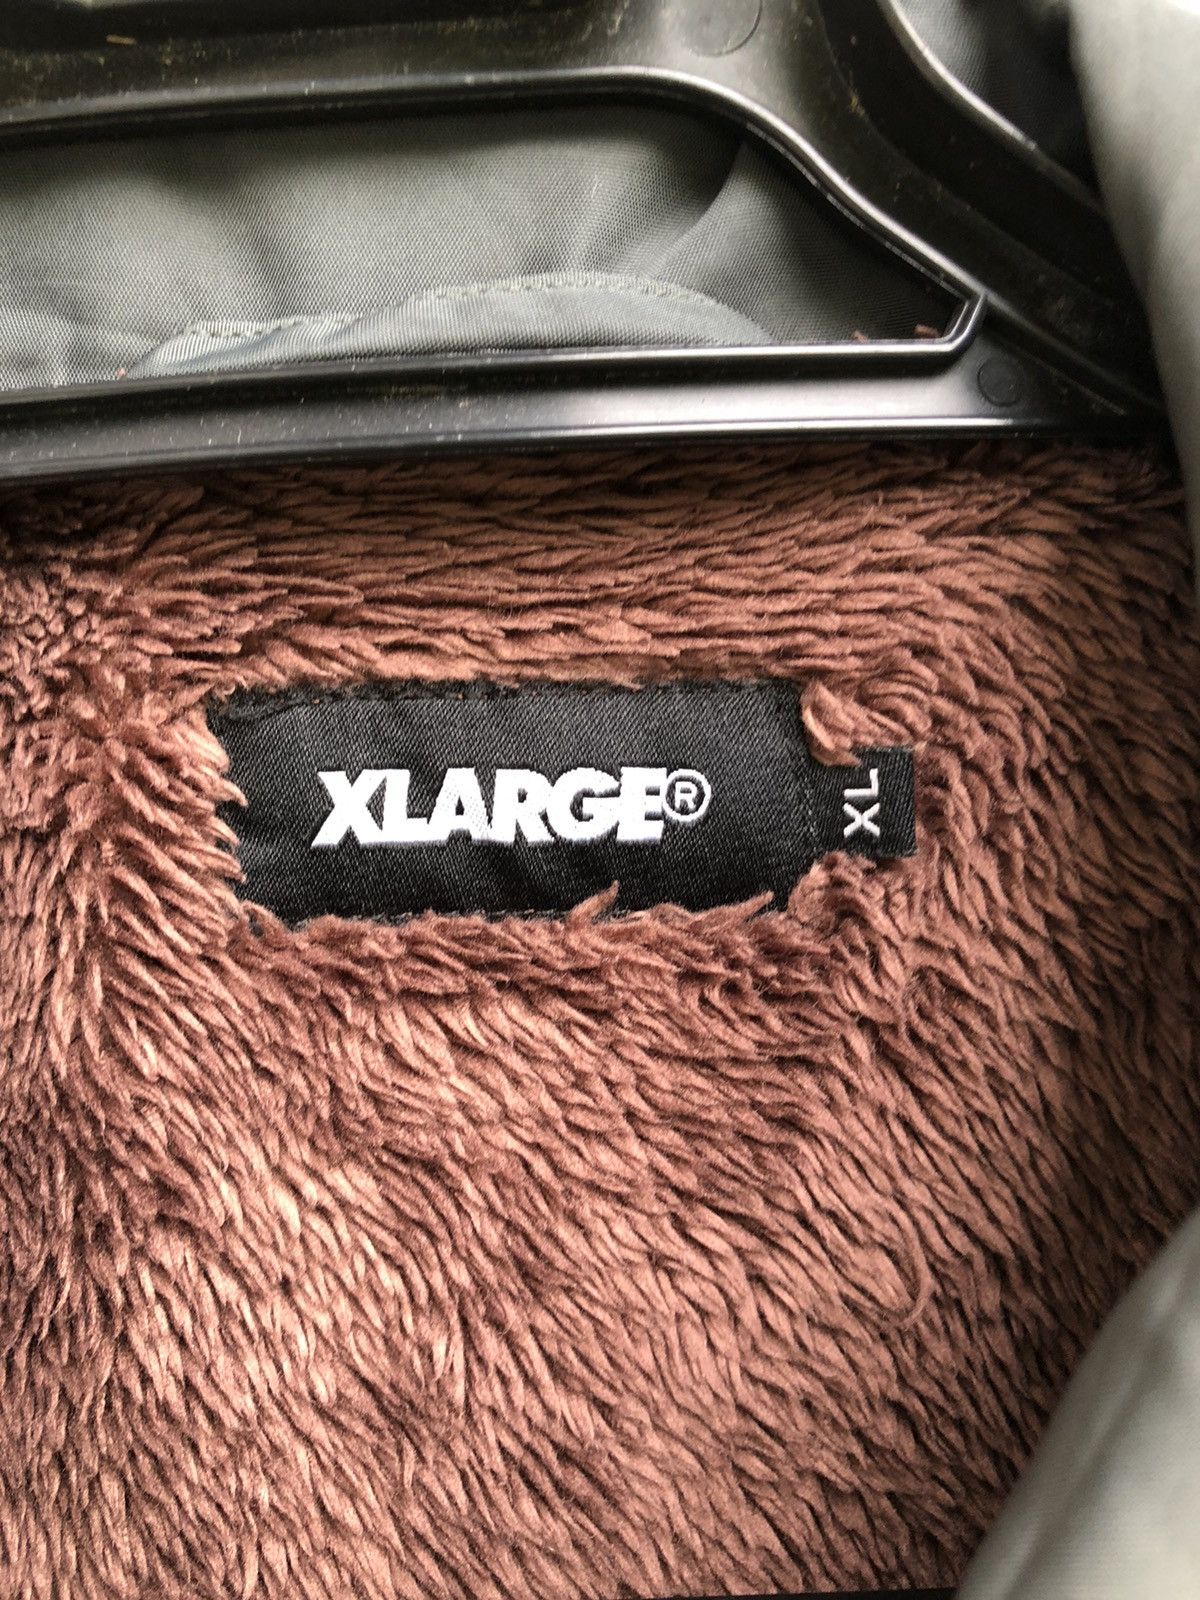 Japanese Brand - Xlarge Embroidery Big Logo Coach Jacket Fleece Lining - 6